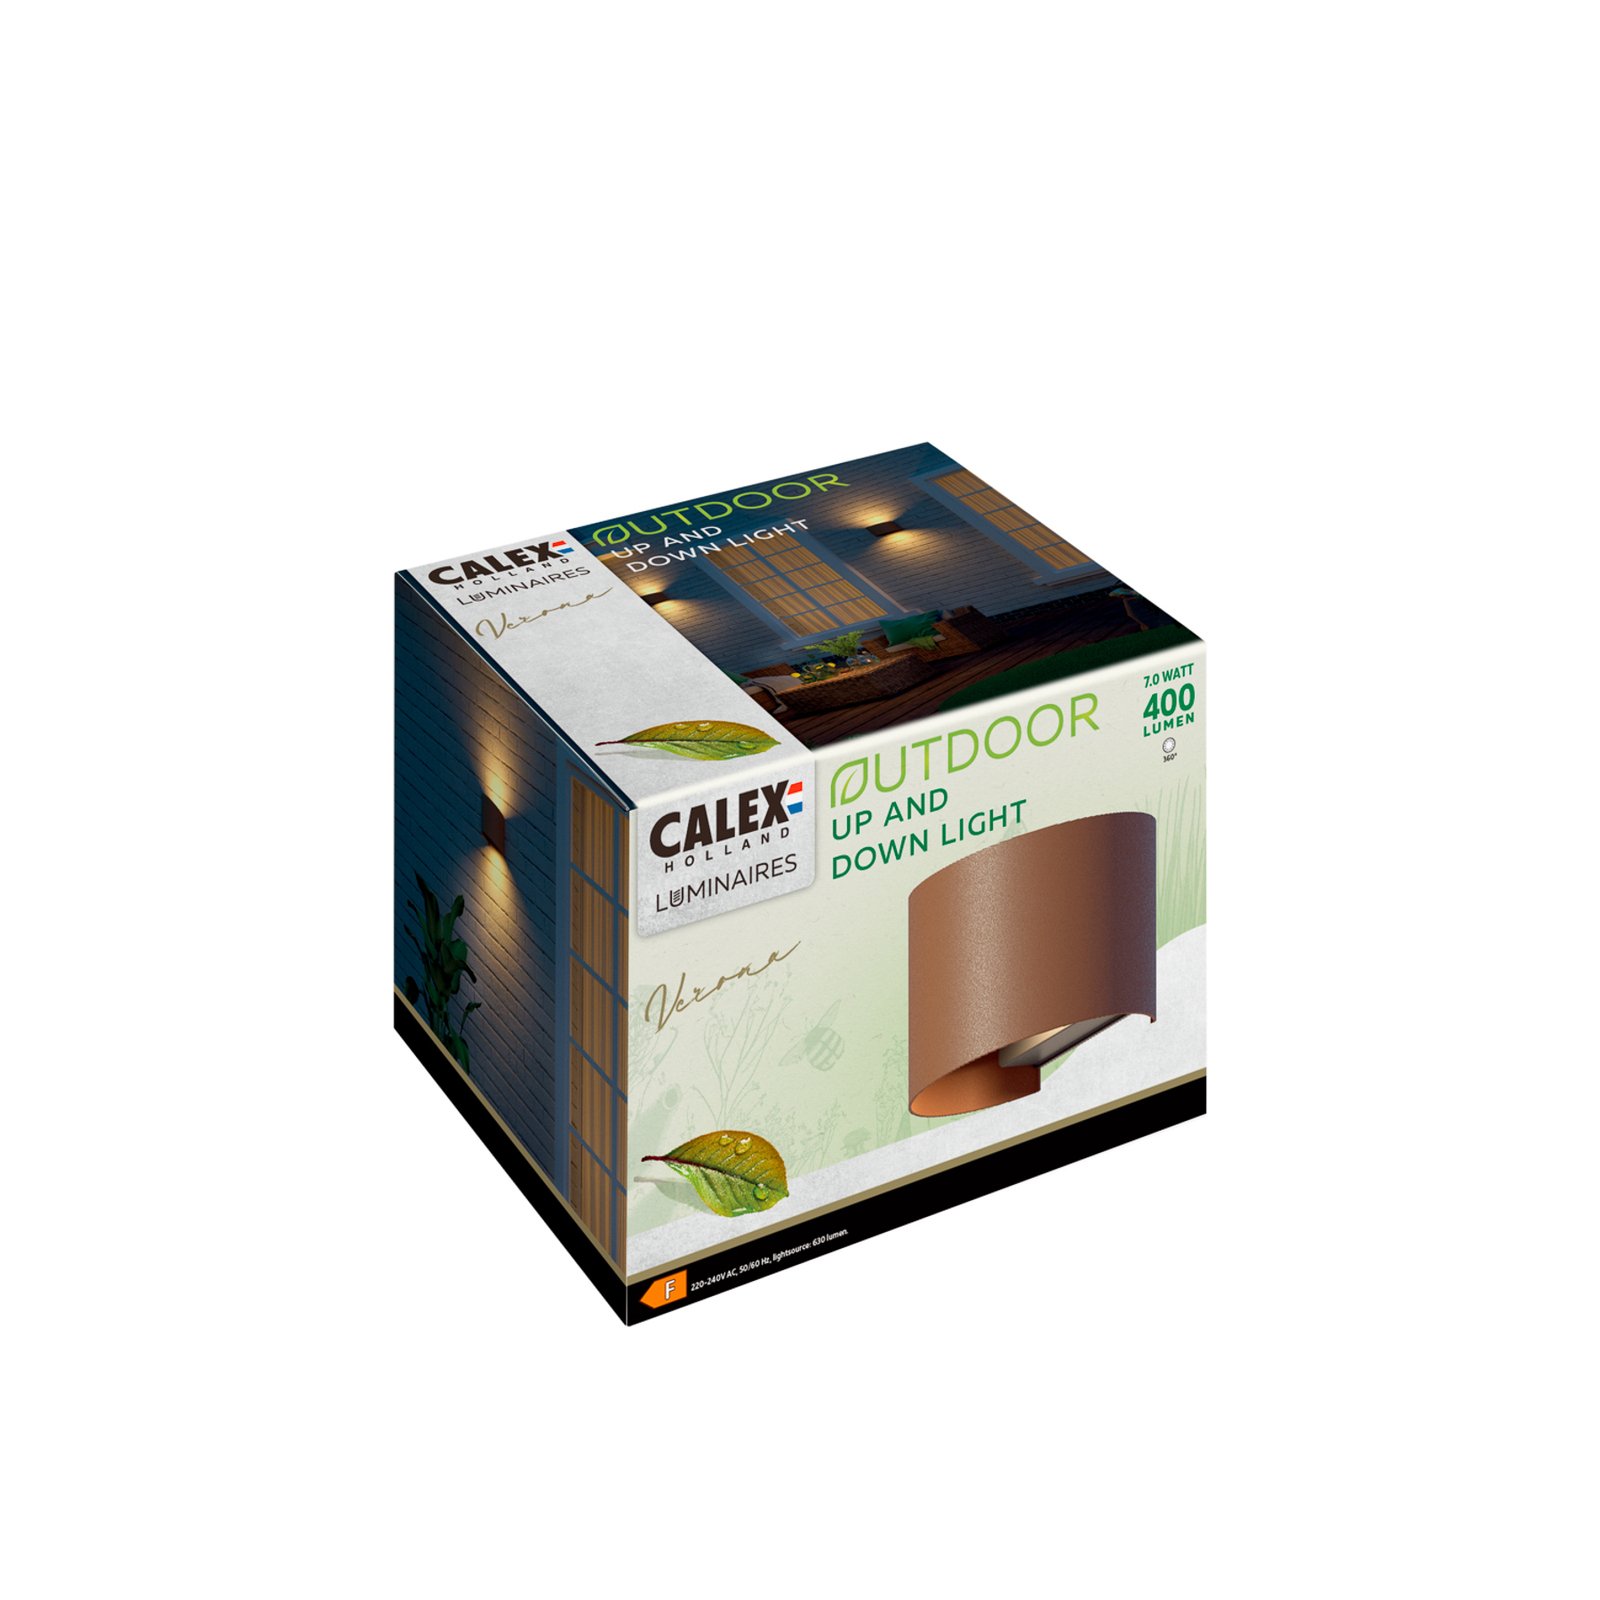 Calex LED-ulkoseinävalaisin soikea, ylös/alas, korkeus 10cm, ruosteenruskea